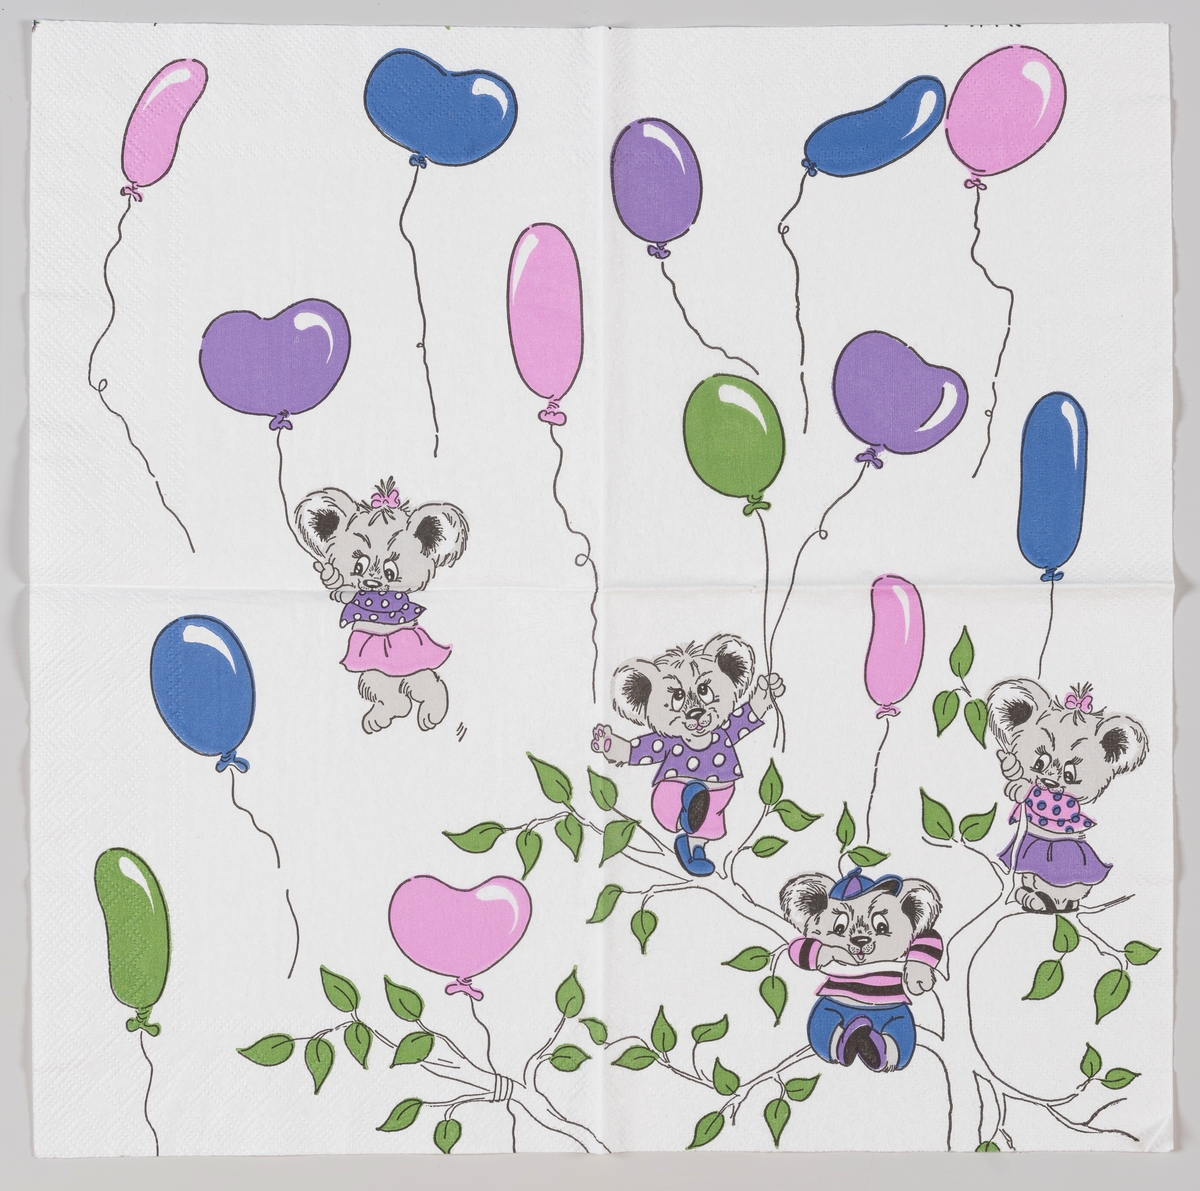 Fire teddybjørner som svever og står øverst i kronen på et tre omgitt av ballonger.